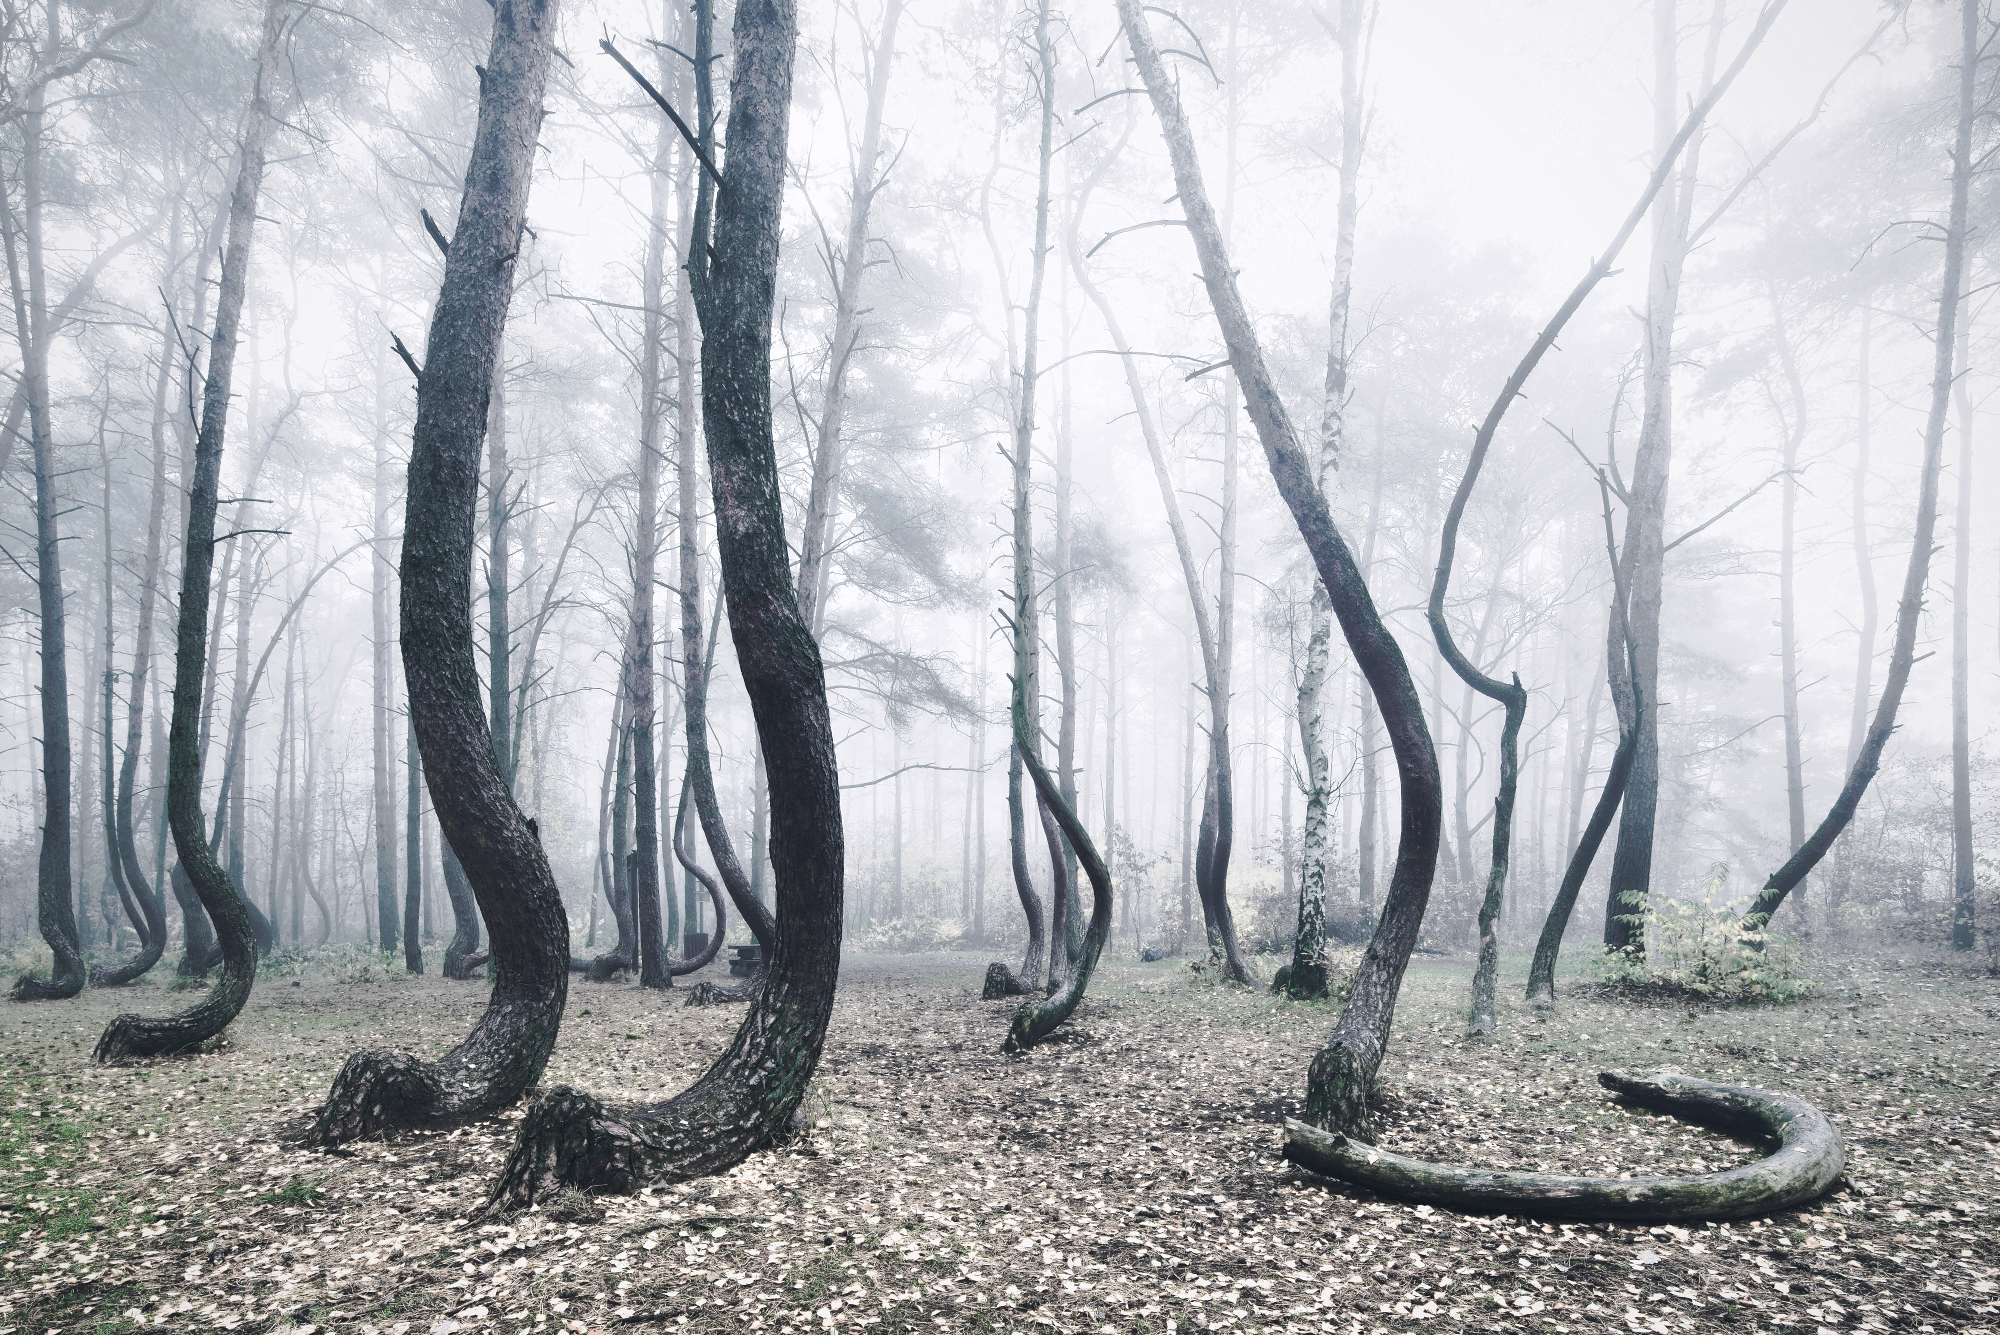 Криволесье. Кривой лес Грыфино Польша. Таинственный лес Шьямалана. Изогнутый лес. Кривое дерево.